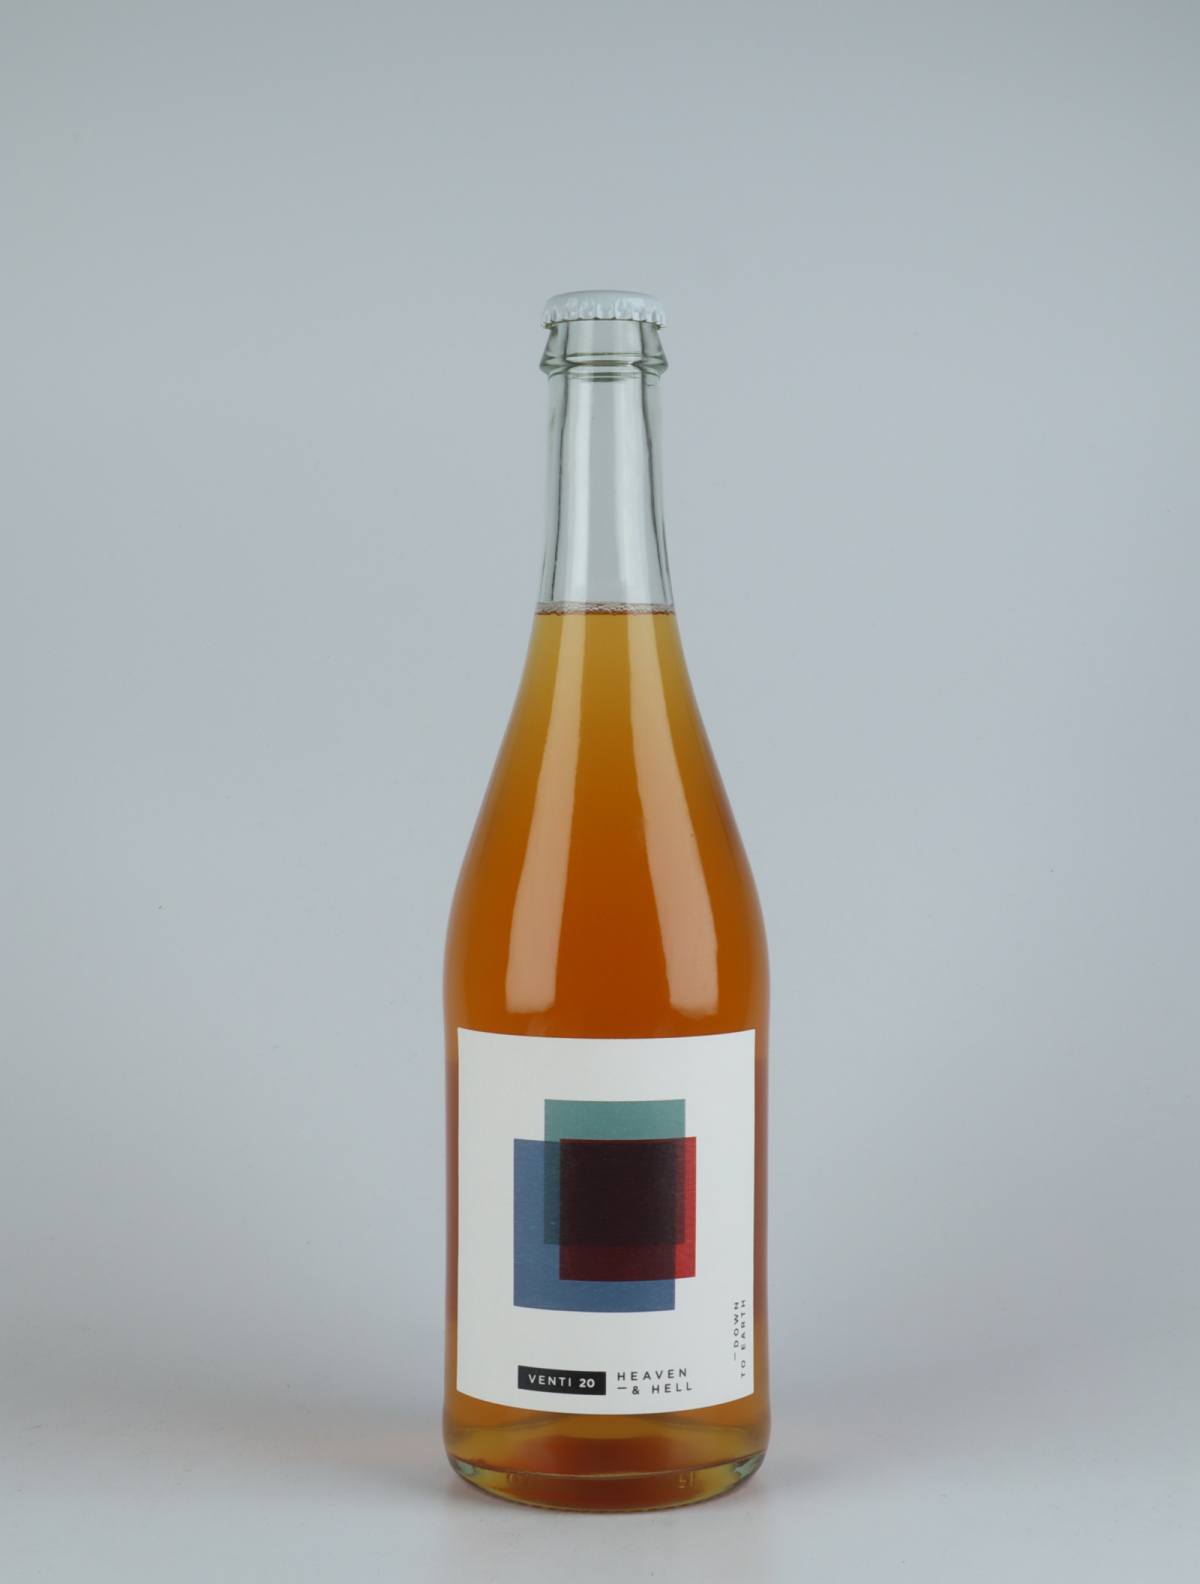 En flaske 2020 Heaven & Hell Orange vin fra do.t.e Vini, Toscana i Italien